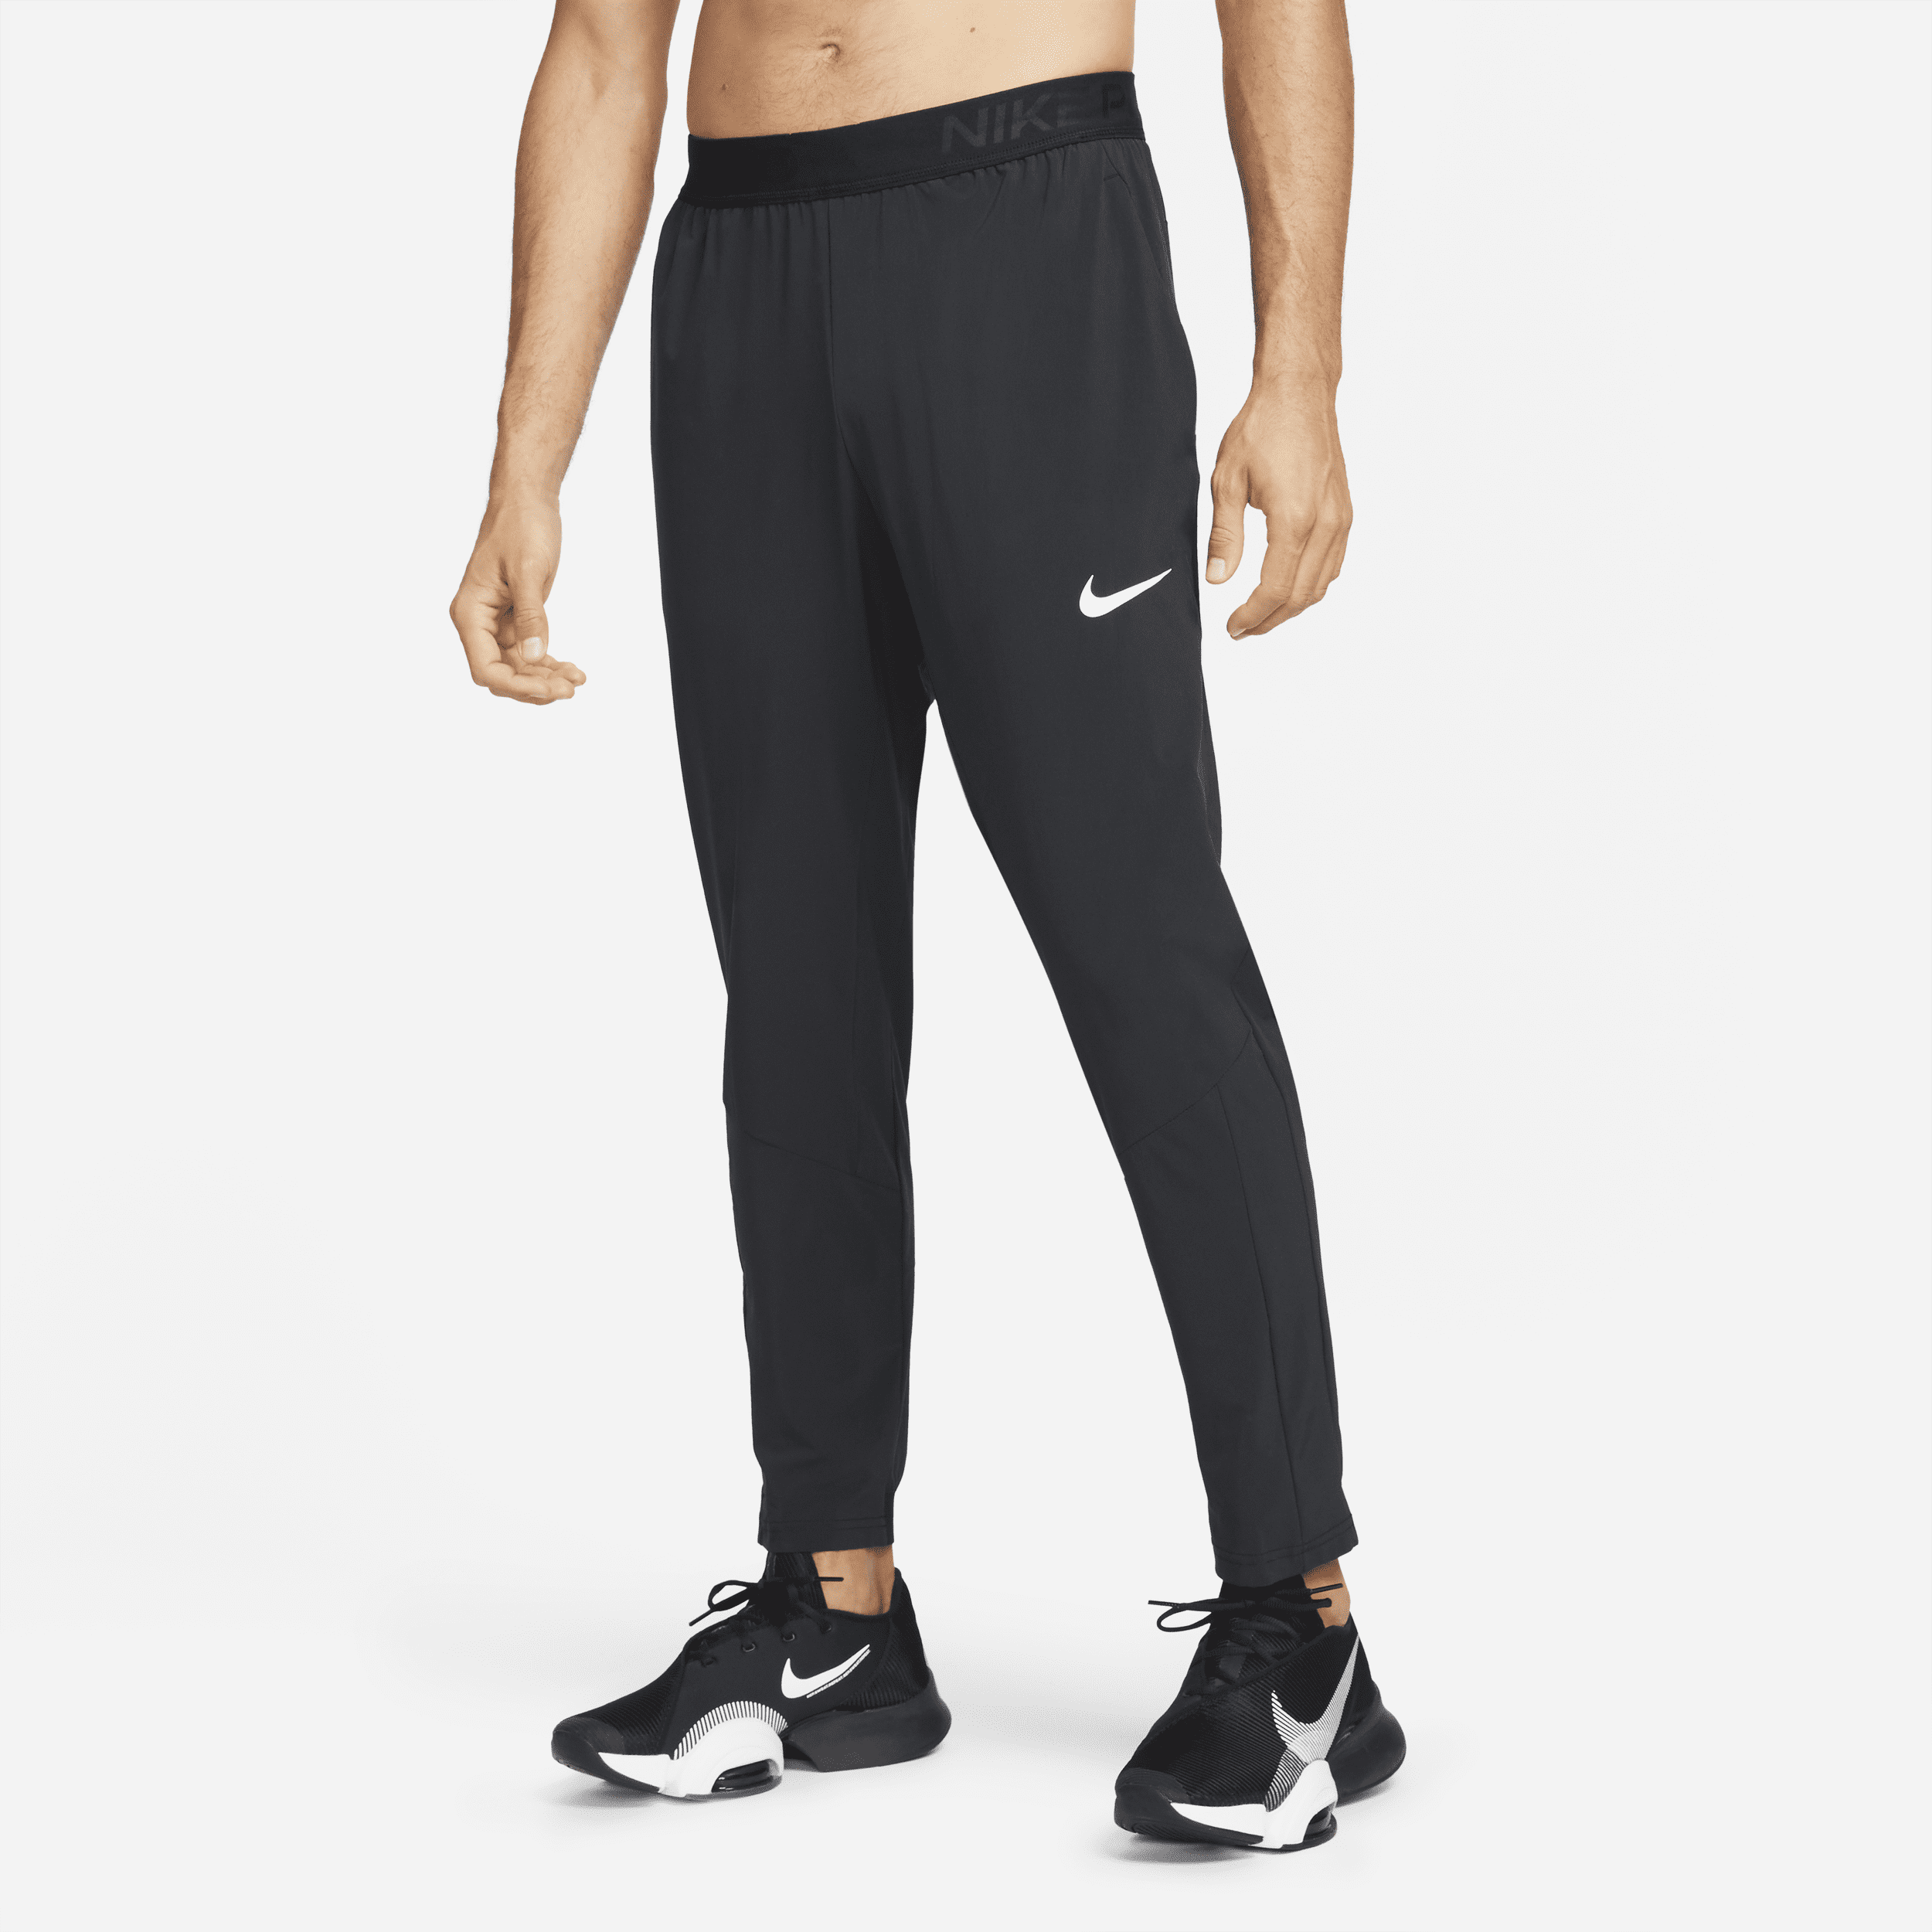 Calça Nike Pro Flex Vent Max Masculina